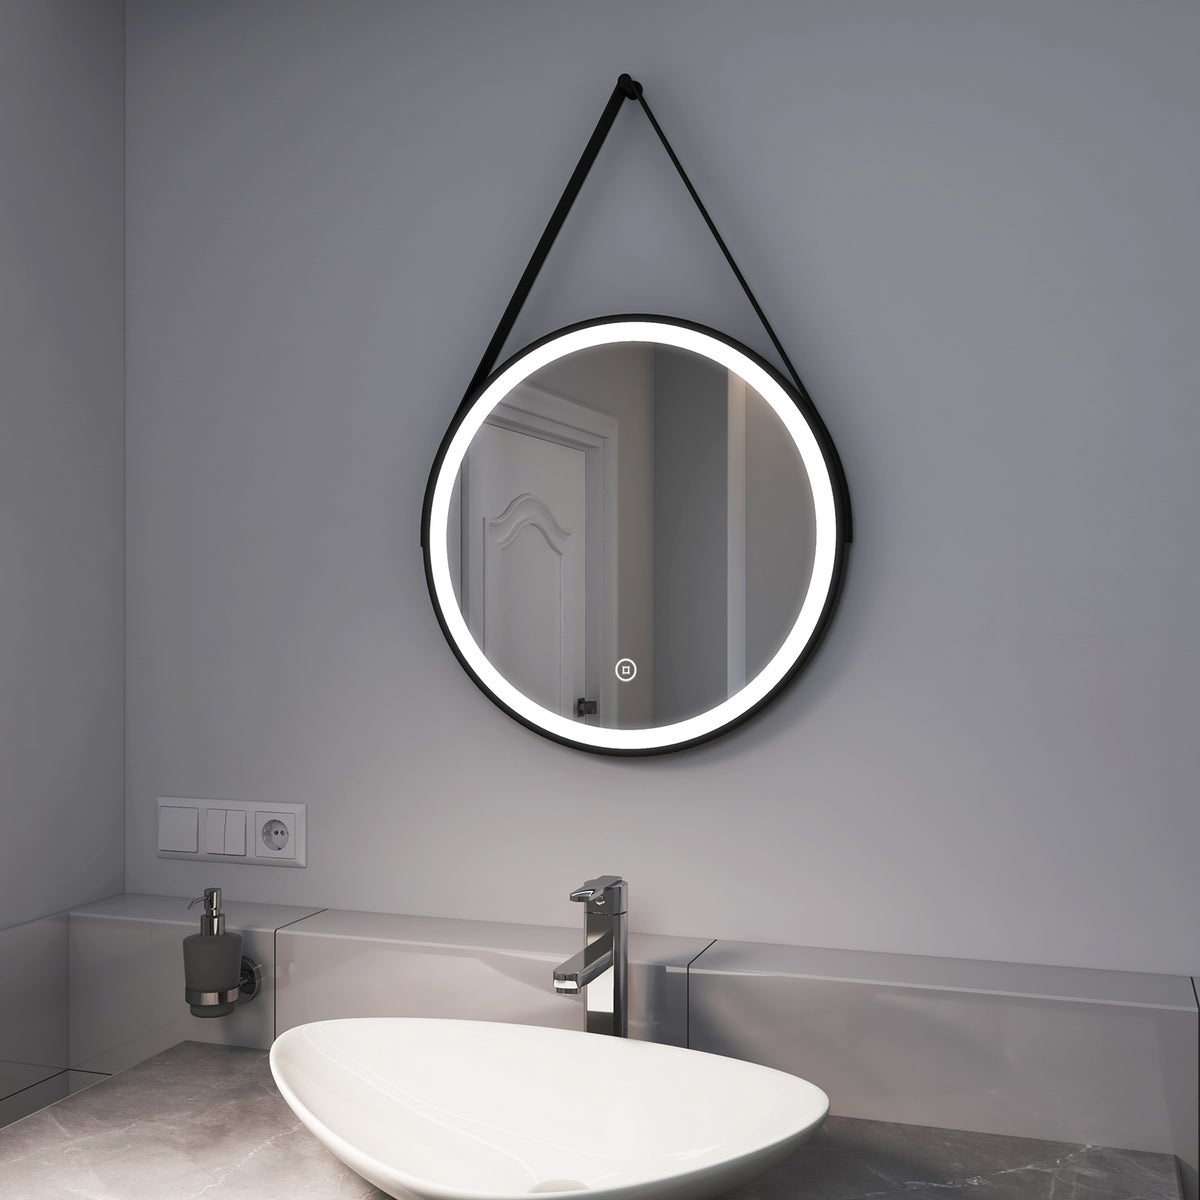 EMKE Badspiegel mit Beleuchtung Schwarz Rahmen und Riemen ф50cm, Kaltweißes Licht,Dimmbar